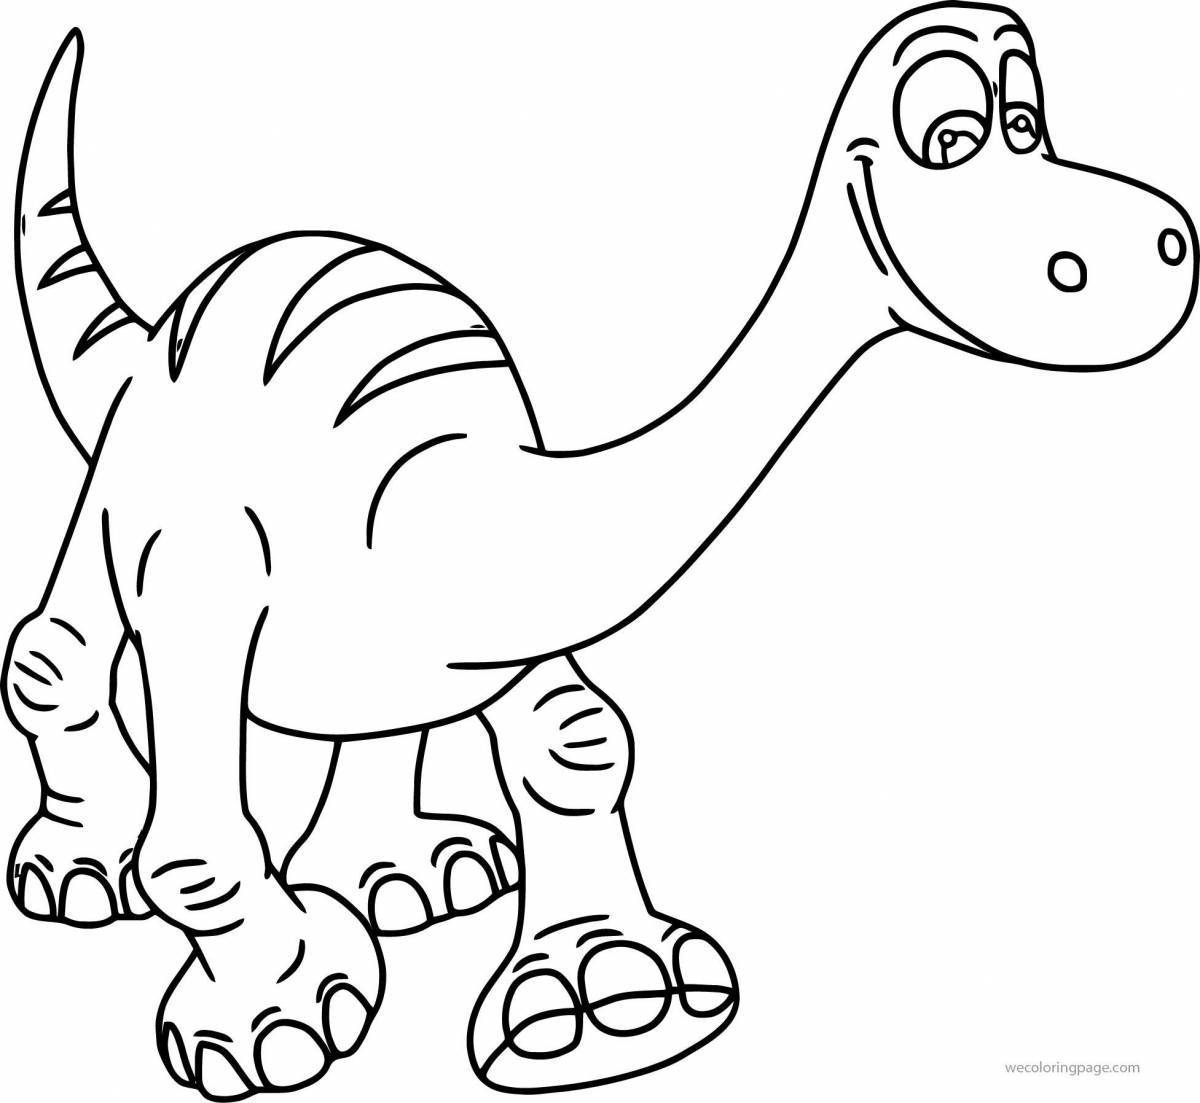 Яркая раскраска динозавров для детей 4-5 лет